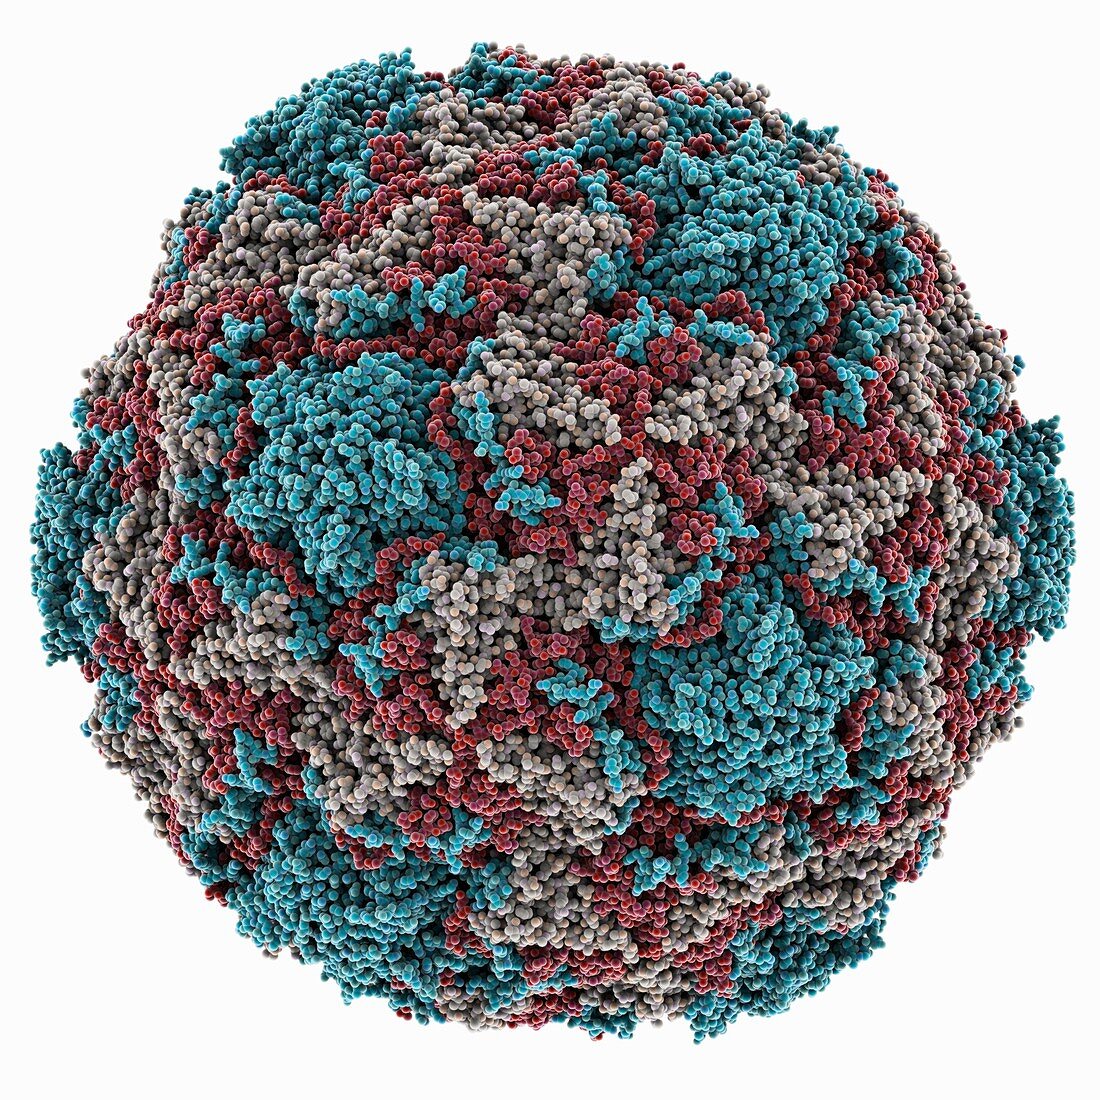 Rhinovirus 14 capsid,molecular model